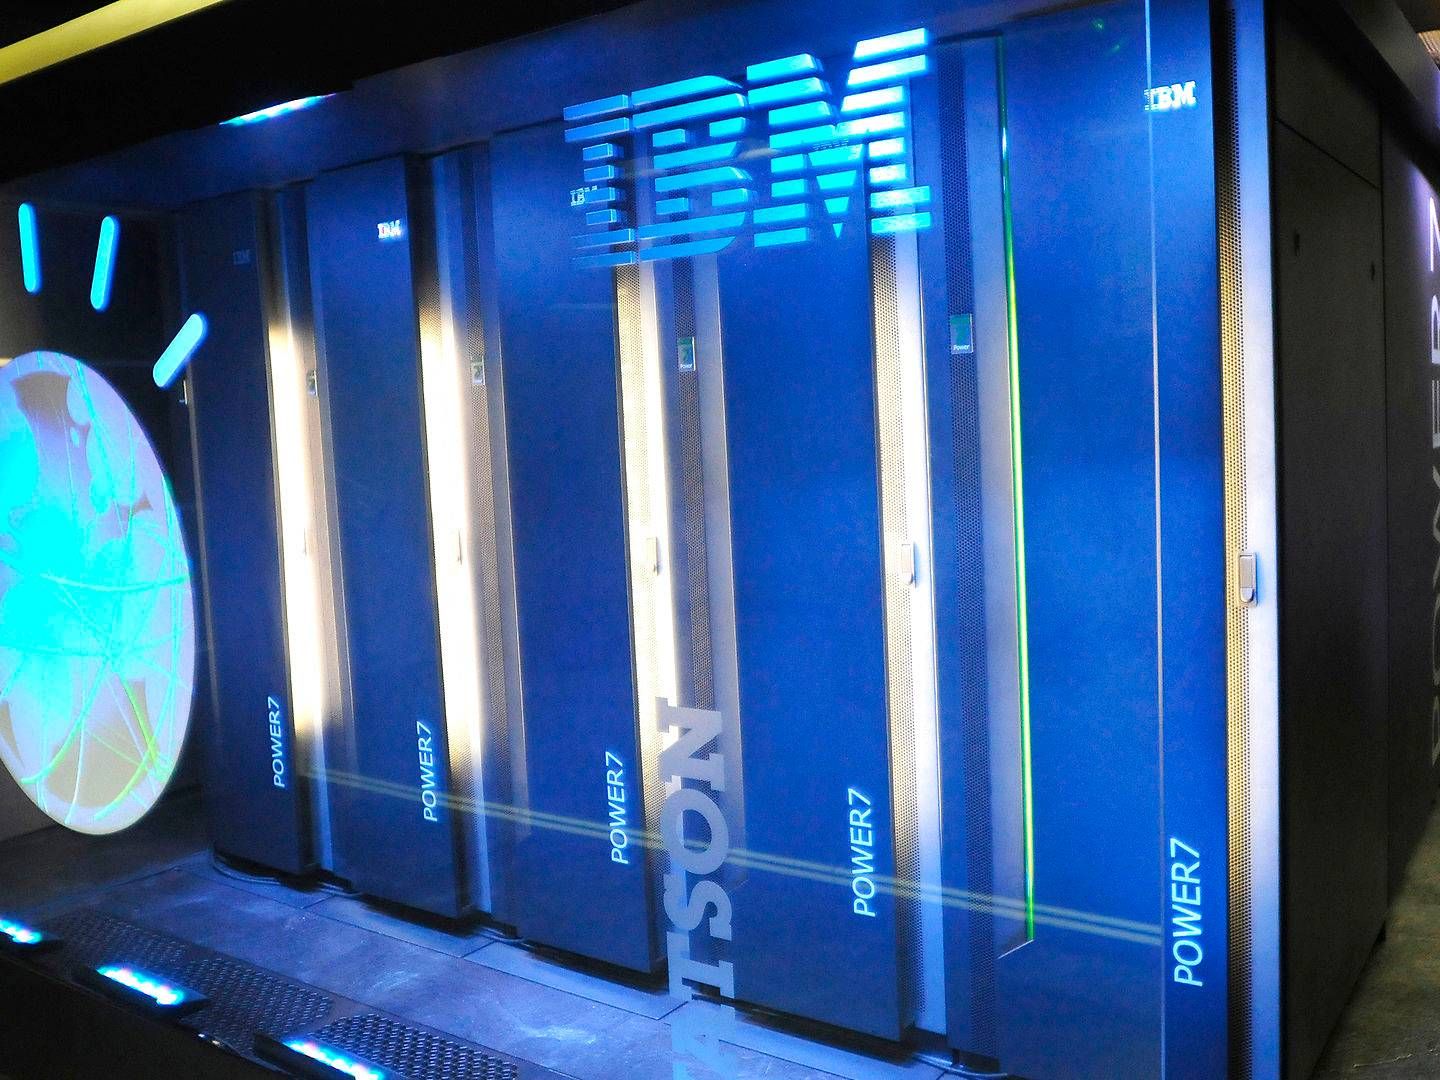 Kunstig intelligens er i langt de fleste tilfælde en integreret del af store computersystemer som IBM's Watson, der i dag har overtaget en del opgaver i store advokatfirmaer og er godt på vej til at kunne læse røntgenbilleder bedre end læger. Men Novo har alligevel valgt at stoppe sit partnerskab med IBM. | Foto: AP/Ritzau Scanpix